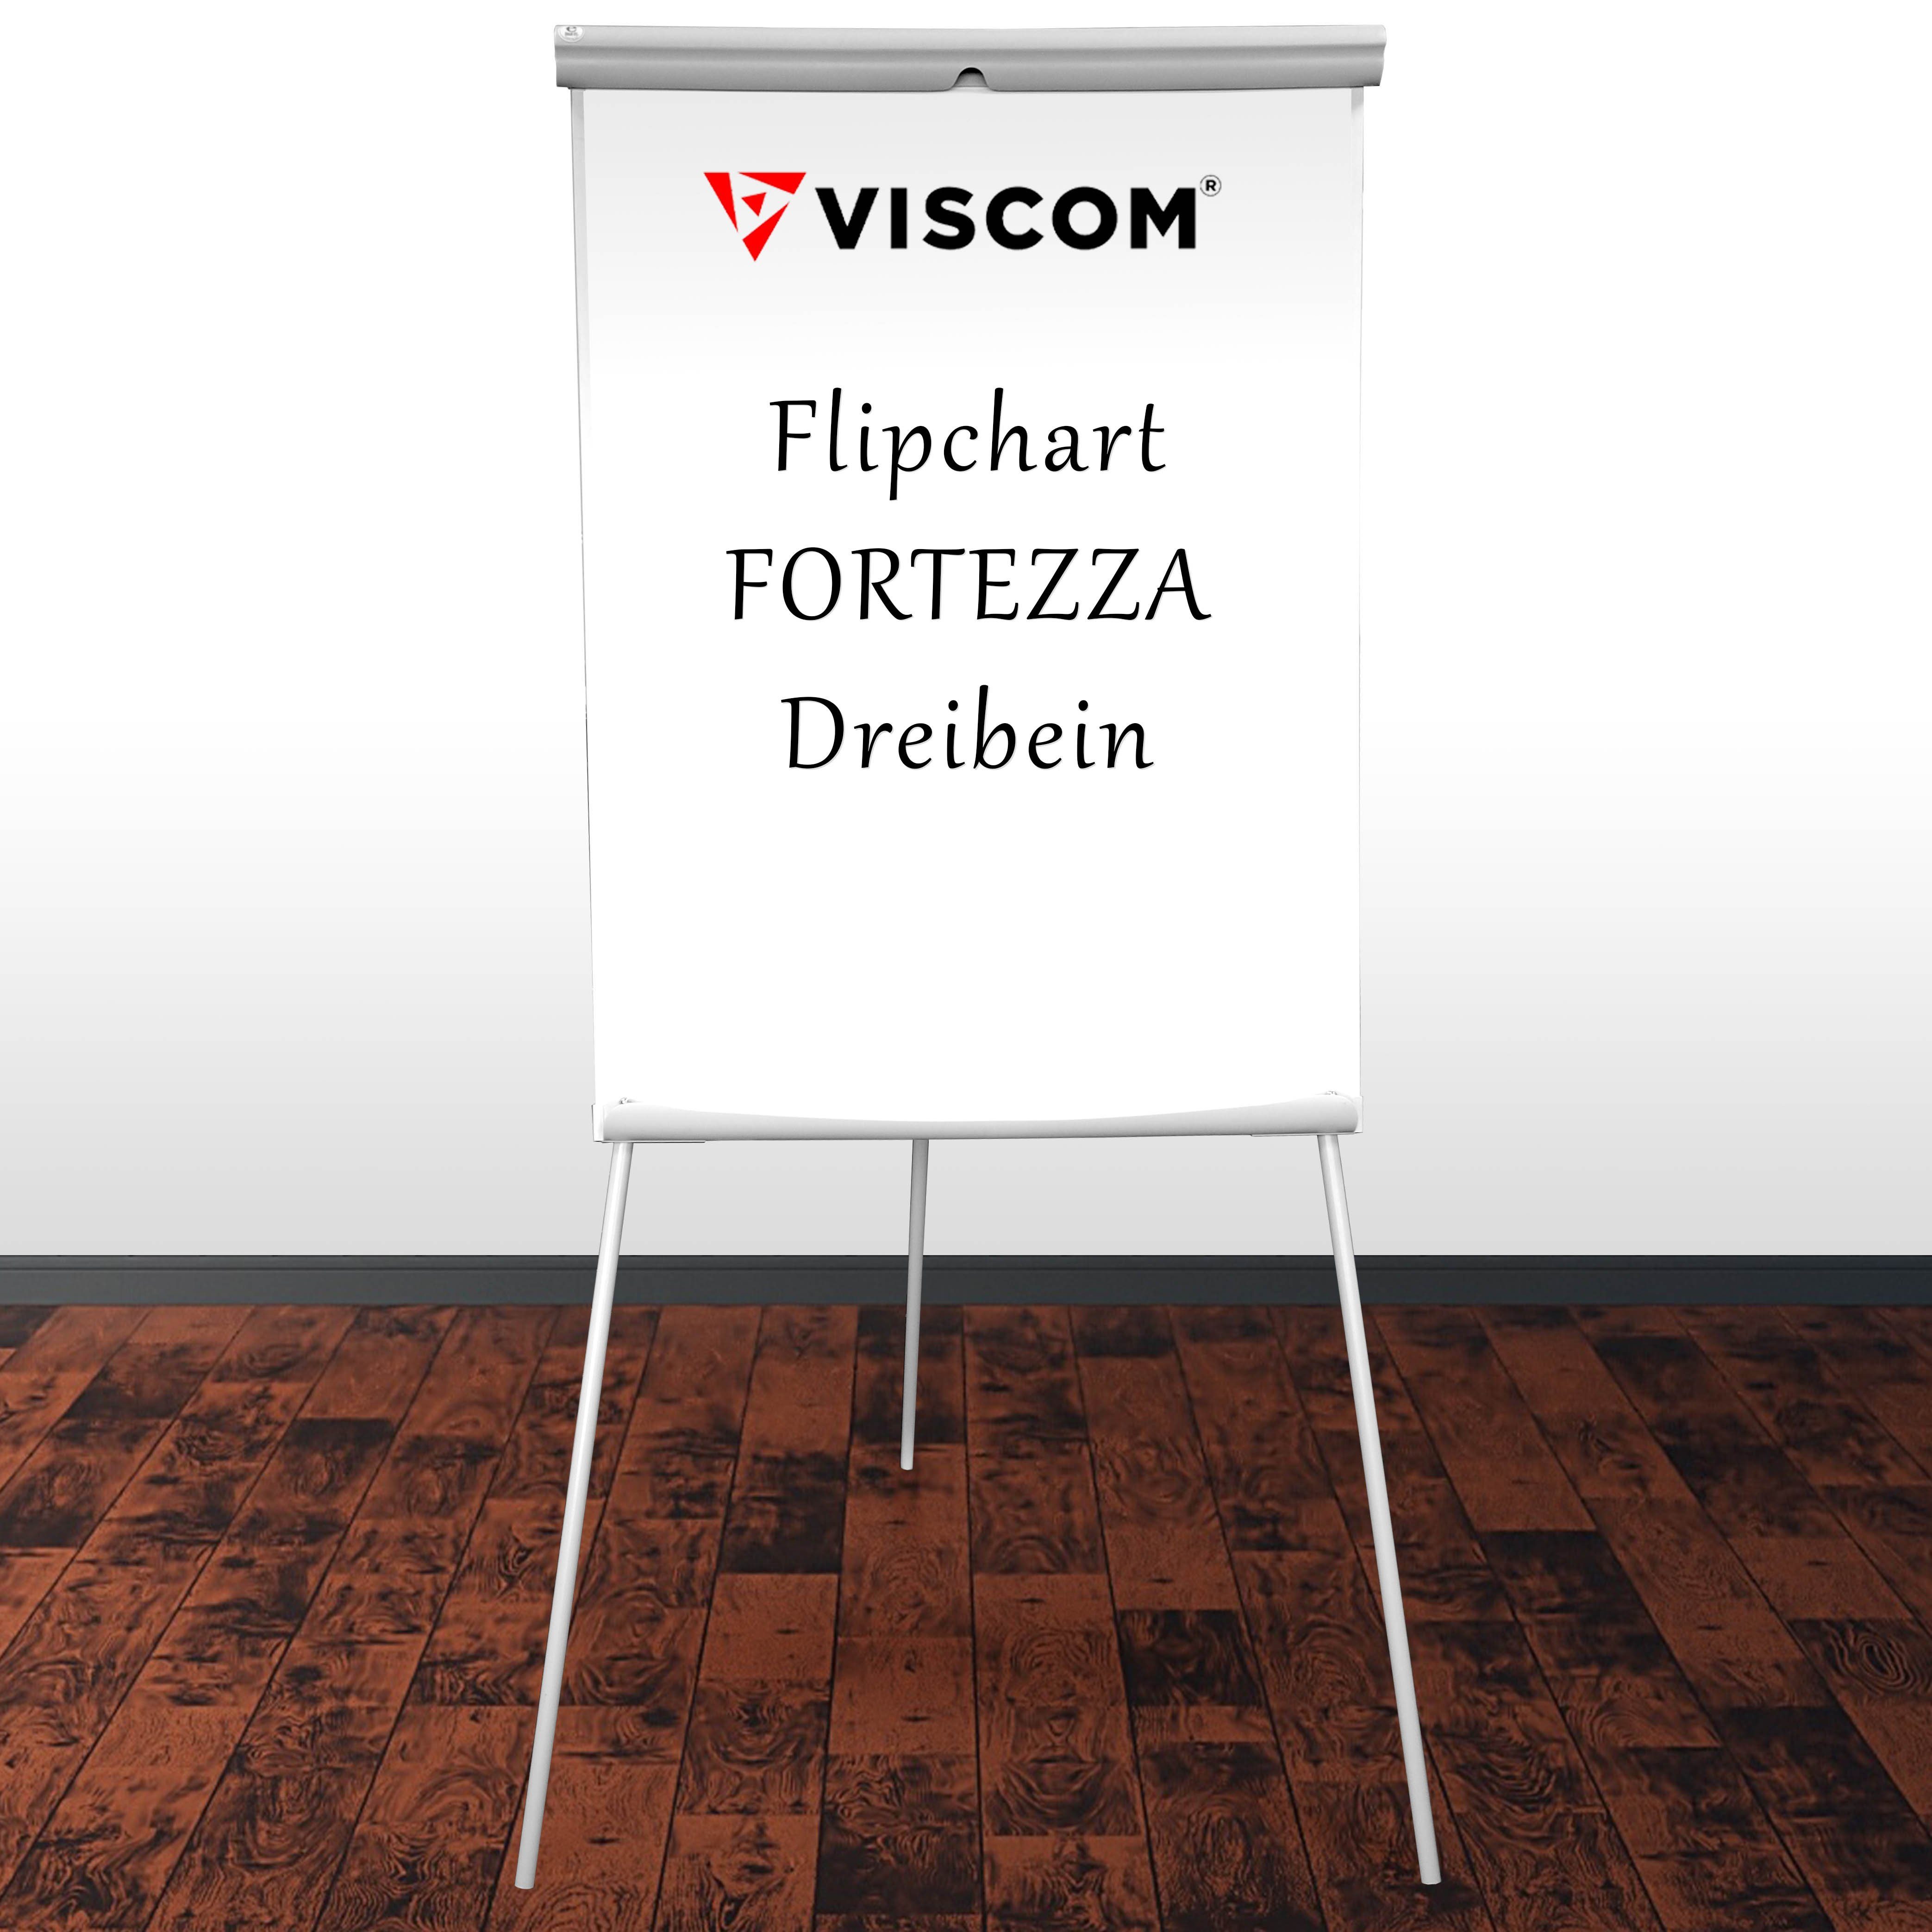 Viscom Standtafel FORTEZZA, Flipchart mit Dreibein-Stativ - magnetische Oberfläche - einstellbar